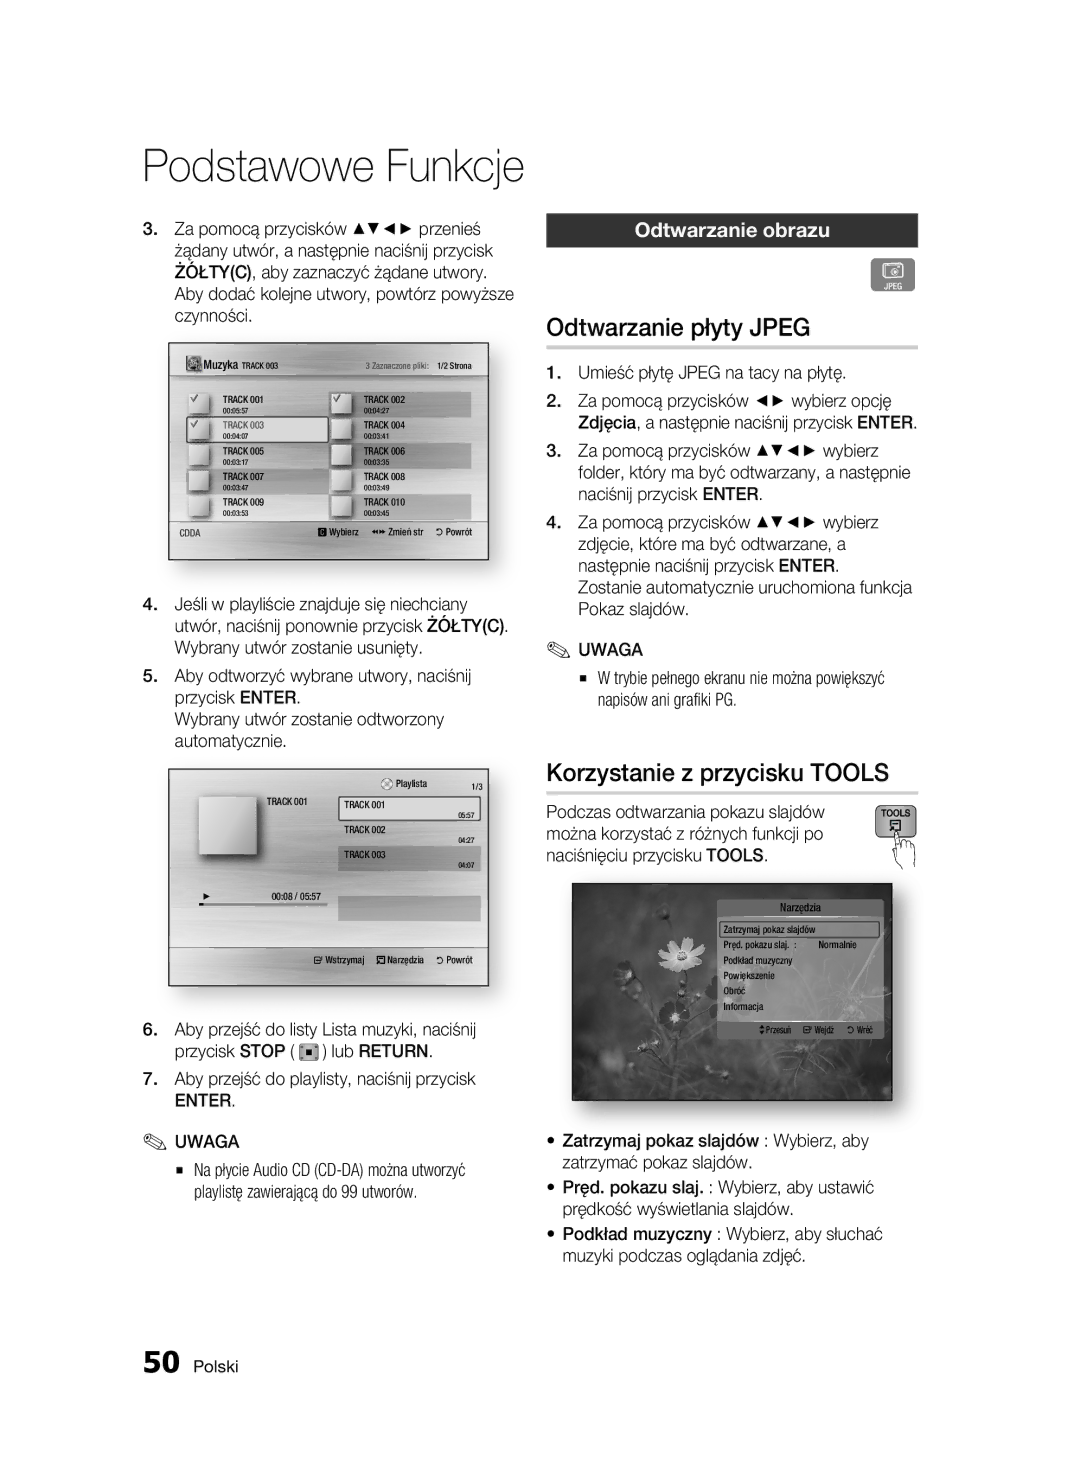 Samsung BD-C7500W/XEE, BD-C7500W/EDC manual Odtwarzanie płyty Jpeg, Korzystanie z przycisku Tools, Odtwarzanie obrazu 